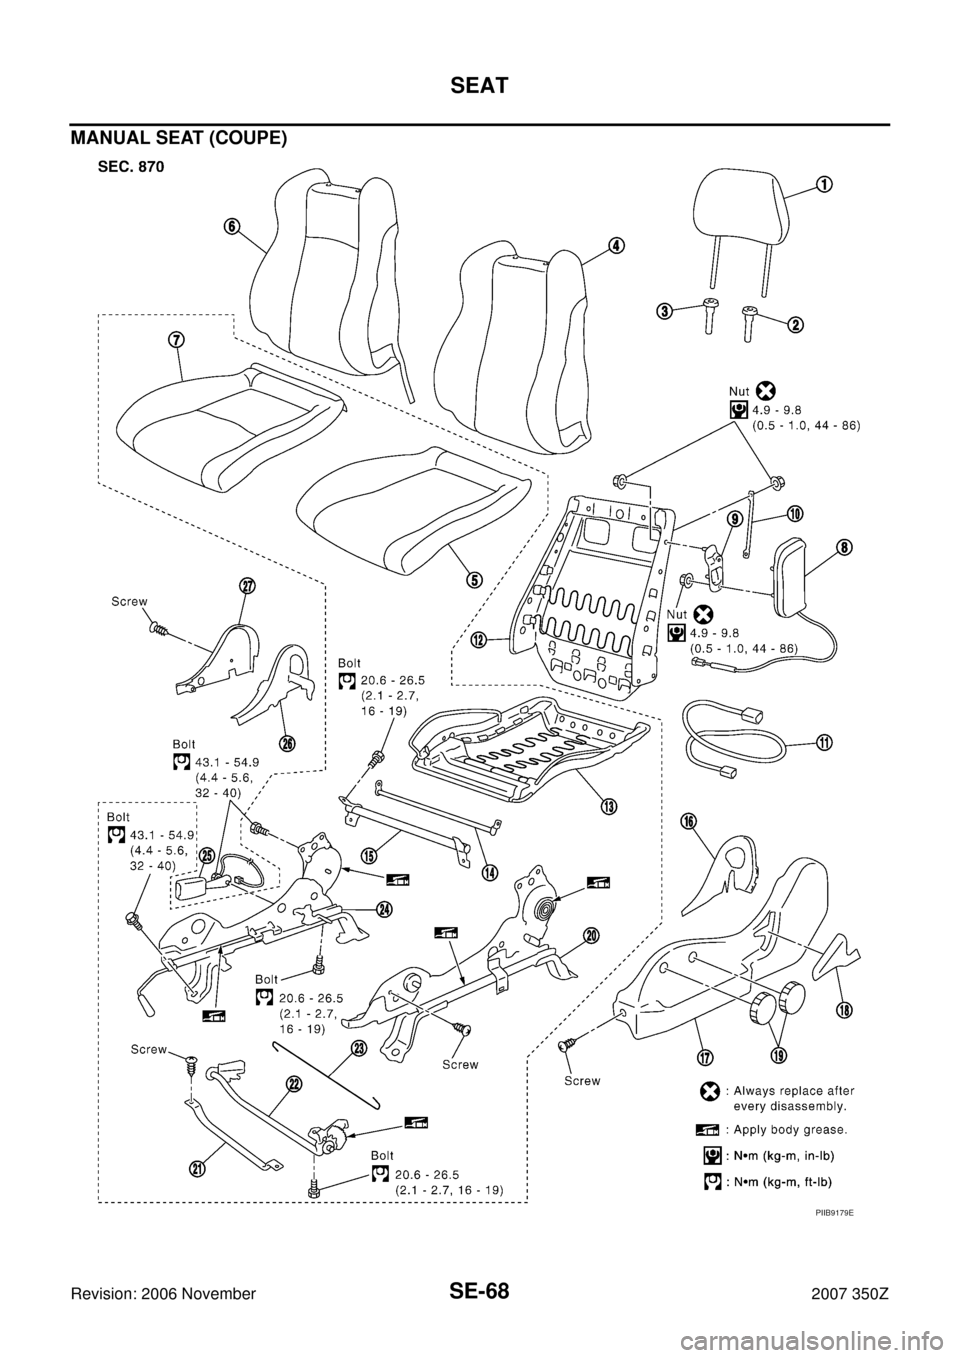 NISSAN 350Z 2007 Z33 Seat Repair Manual SE-68
SEAT
Revision: 2006 November2007 350Z
MANUAL SEAT (COUPE)
PIIB9179E 